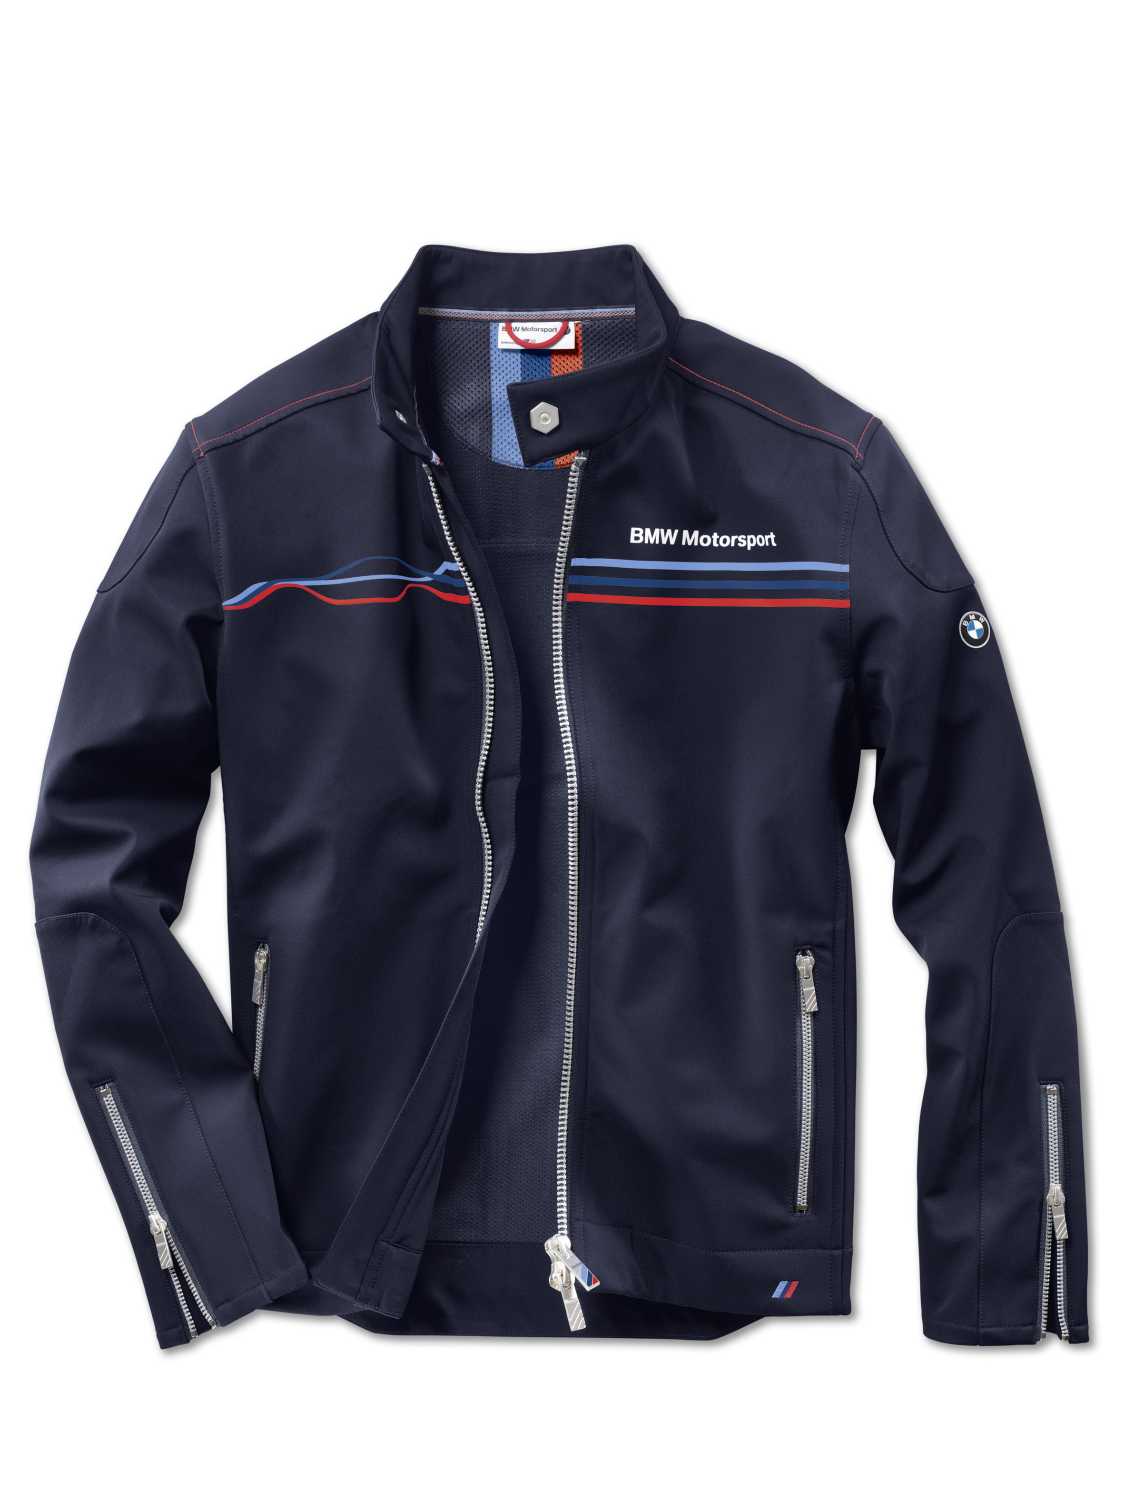 BMW Motorsport Collection. Motorsport Soft Shell Jacket. For men in ...